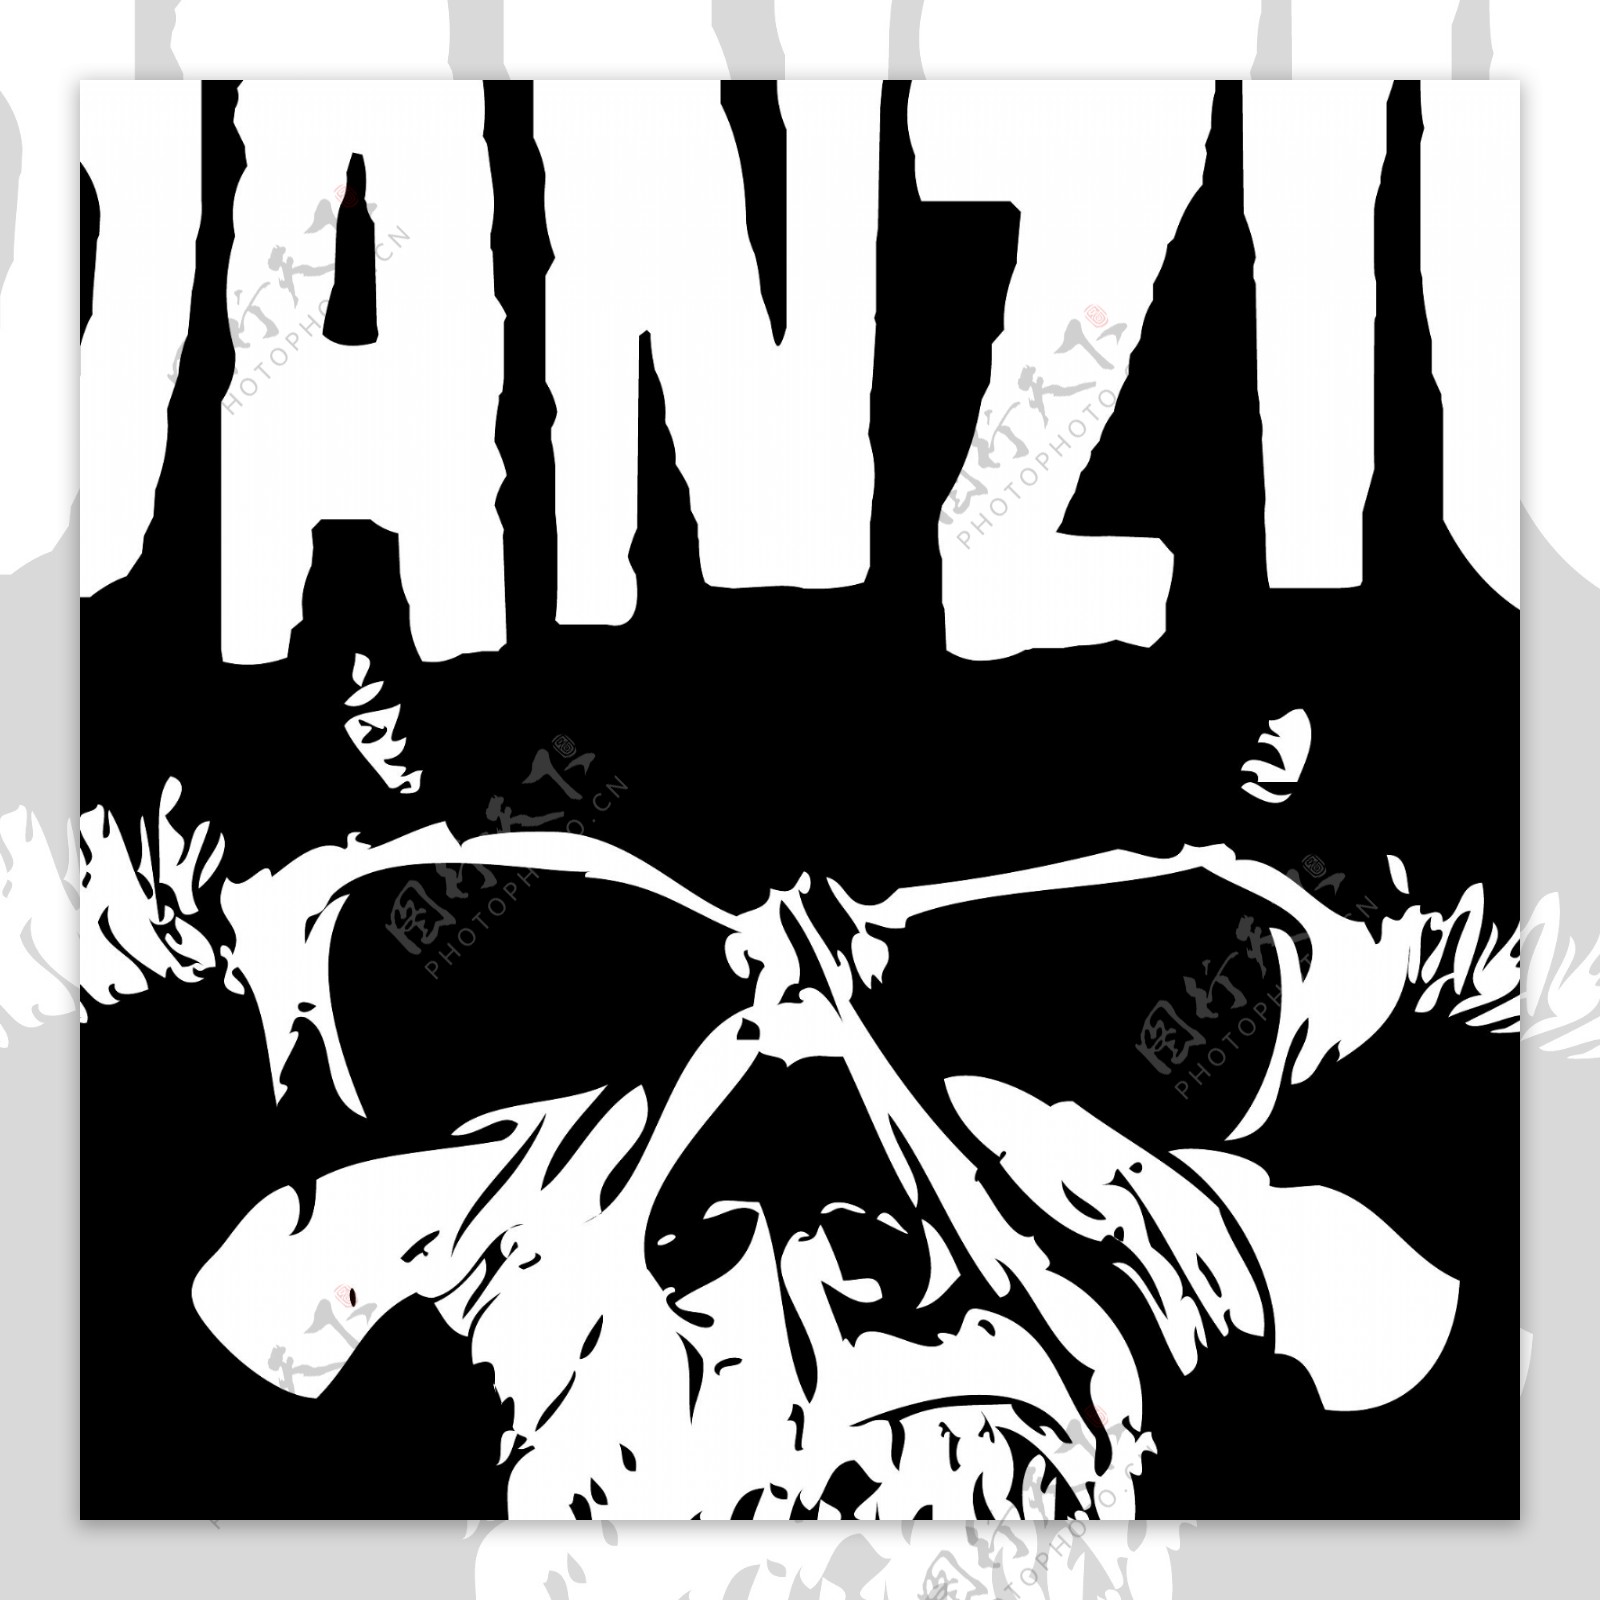 DanzigSkulllogo设计欣赏DanzigSkull音乐相关LOGO下载标志设计欣赏